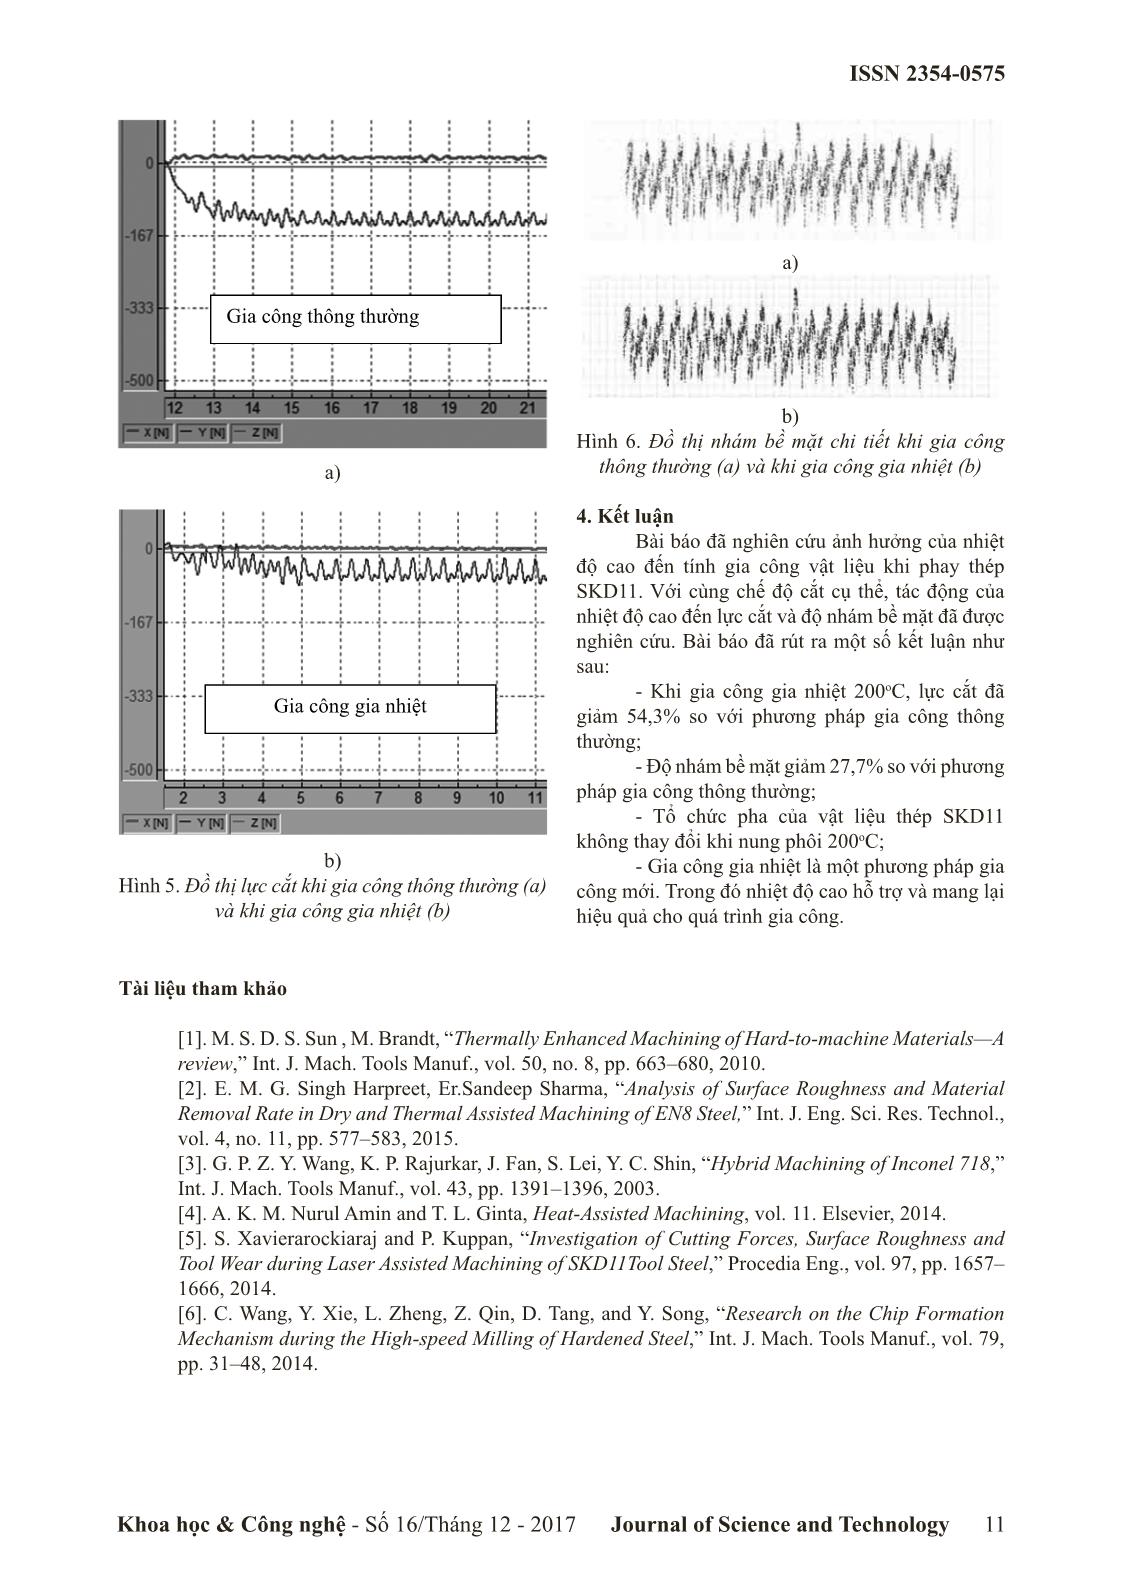 Nghiên cứu ảnh hưởng của quá trình gia nhiệt đến lực cắt và nhám bề mặt khi phay thép SKD11 trang 4